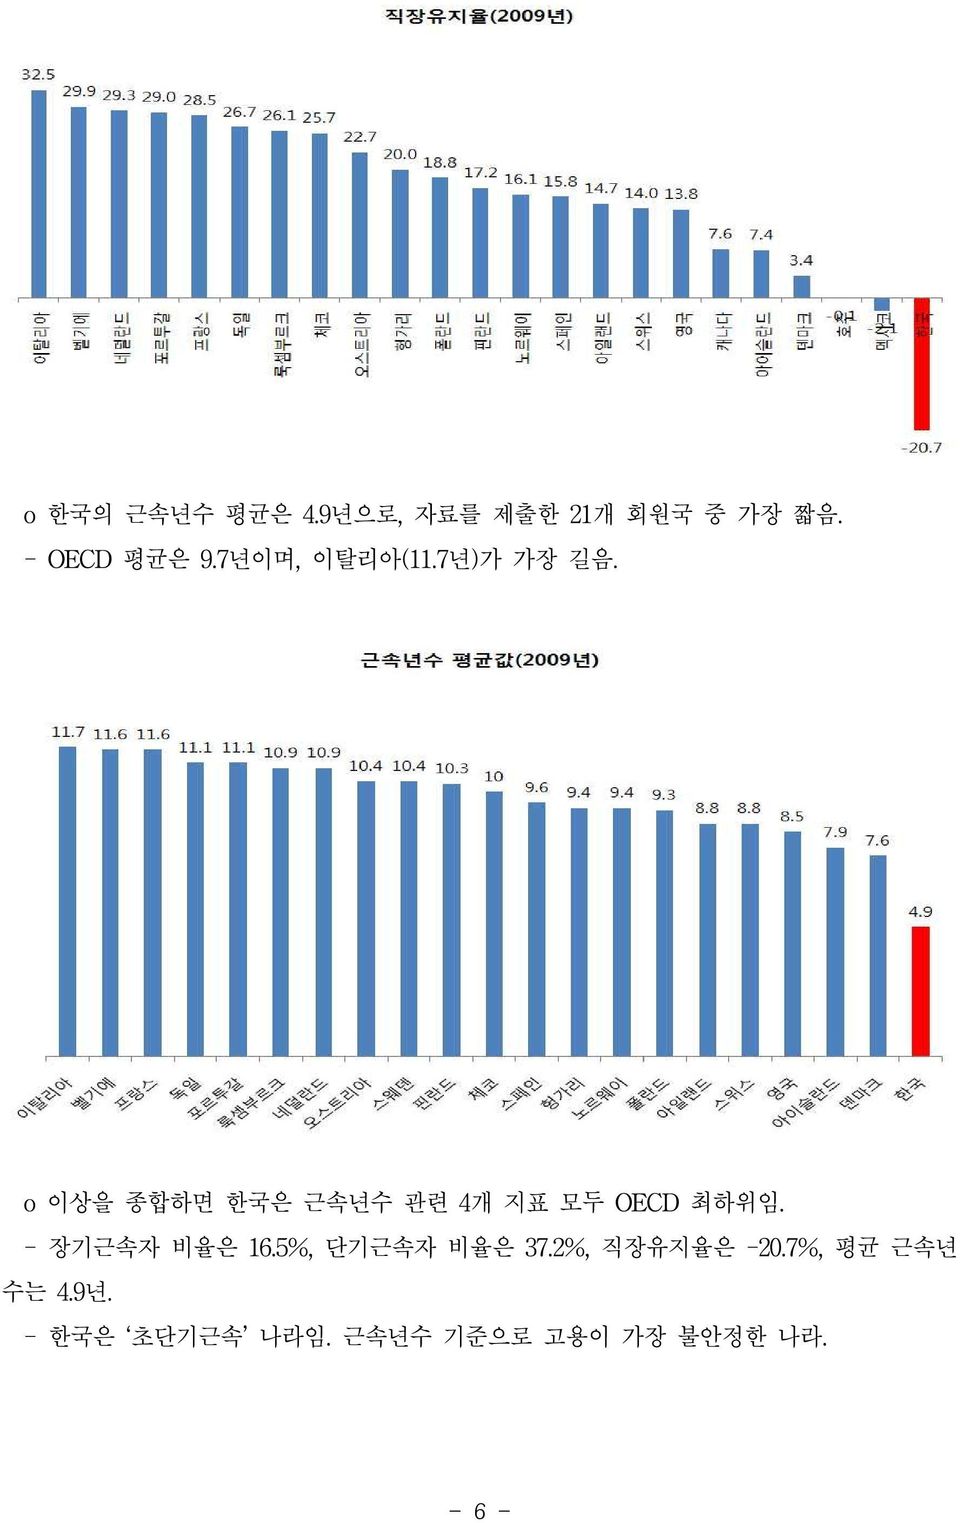 o 이상을 종합하면 한국은 근속년수 관련 4개 지표 모두 OECD 최하위임. - 장기근속자 비율은 16.